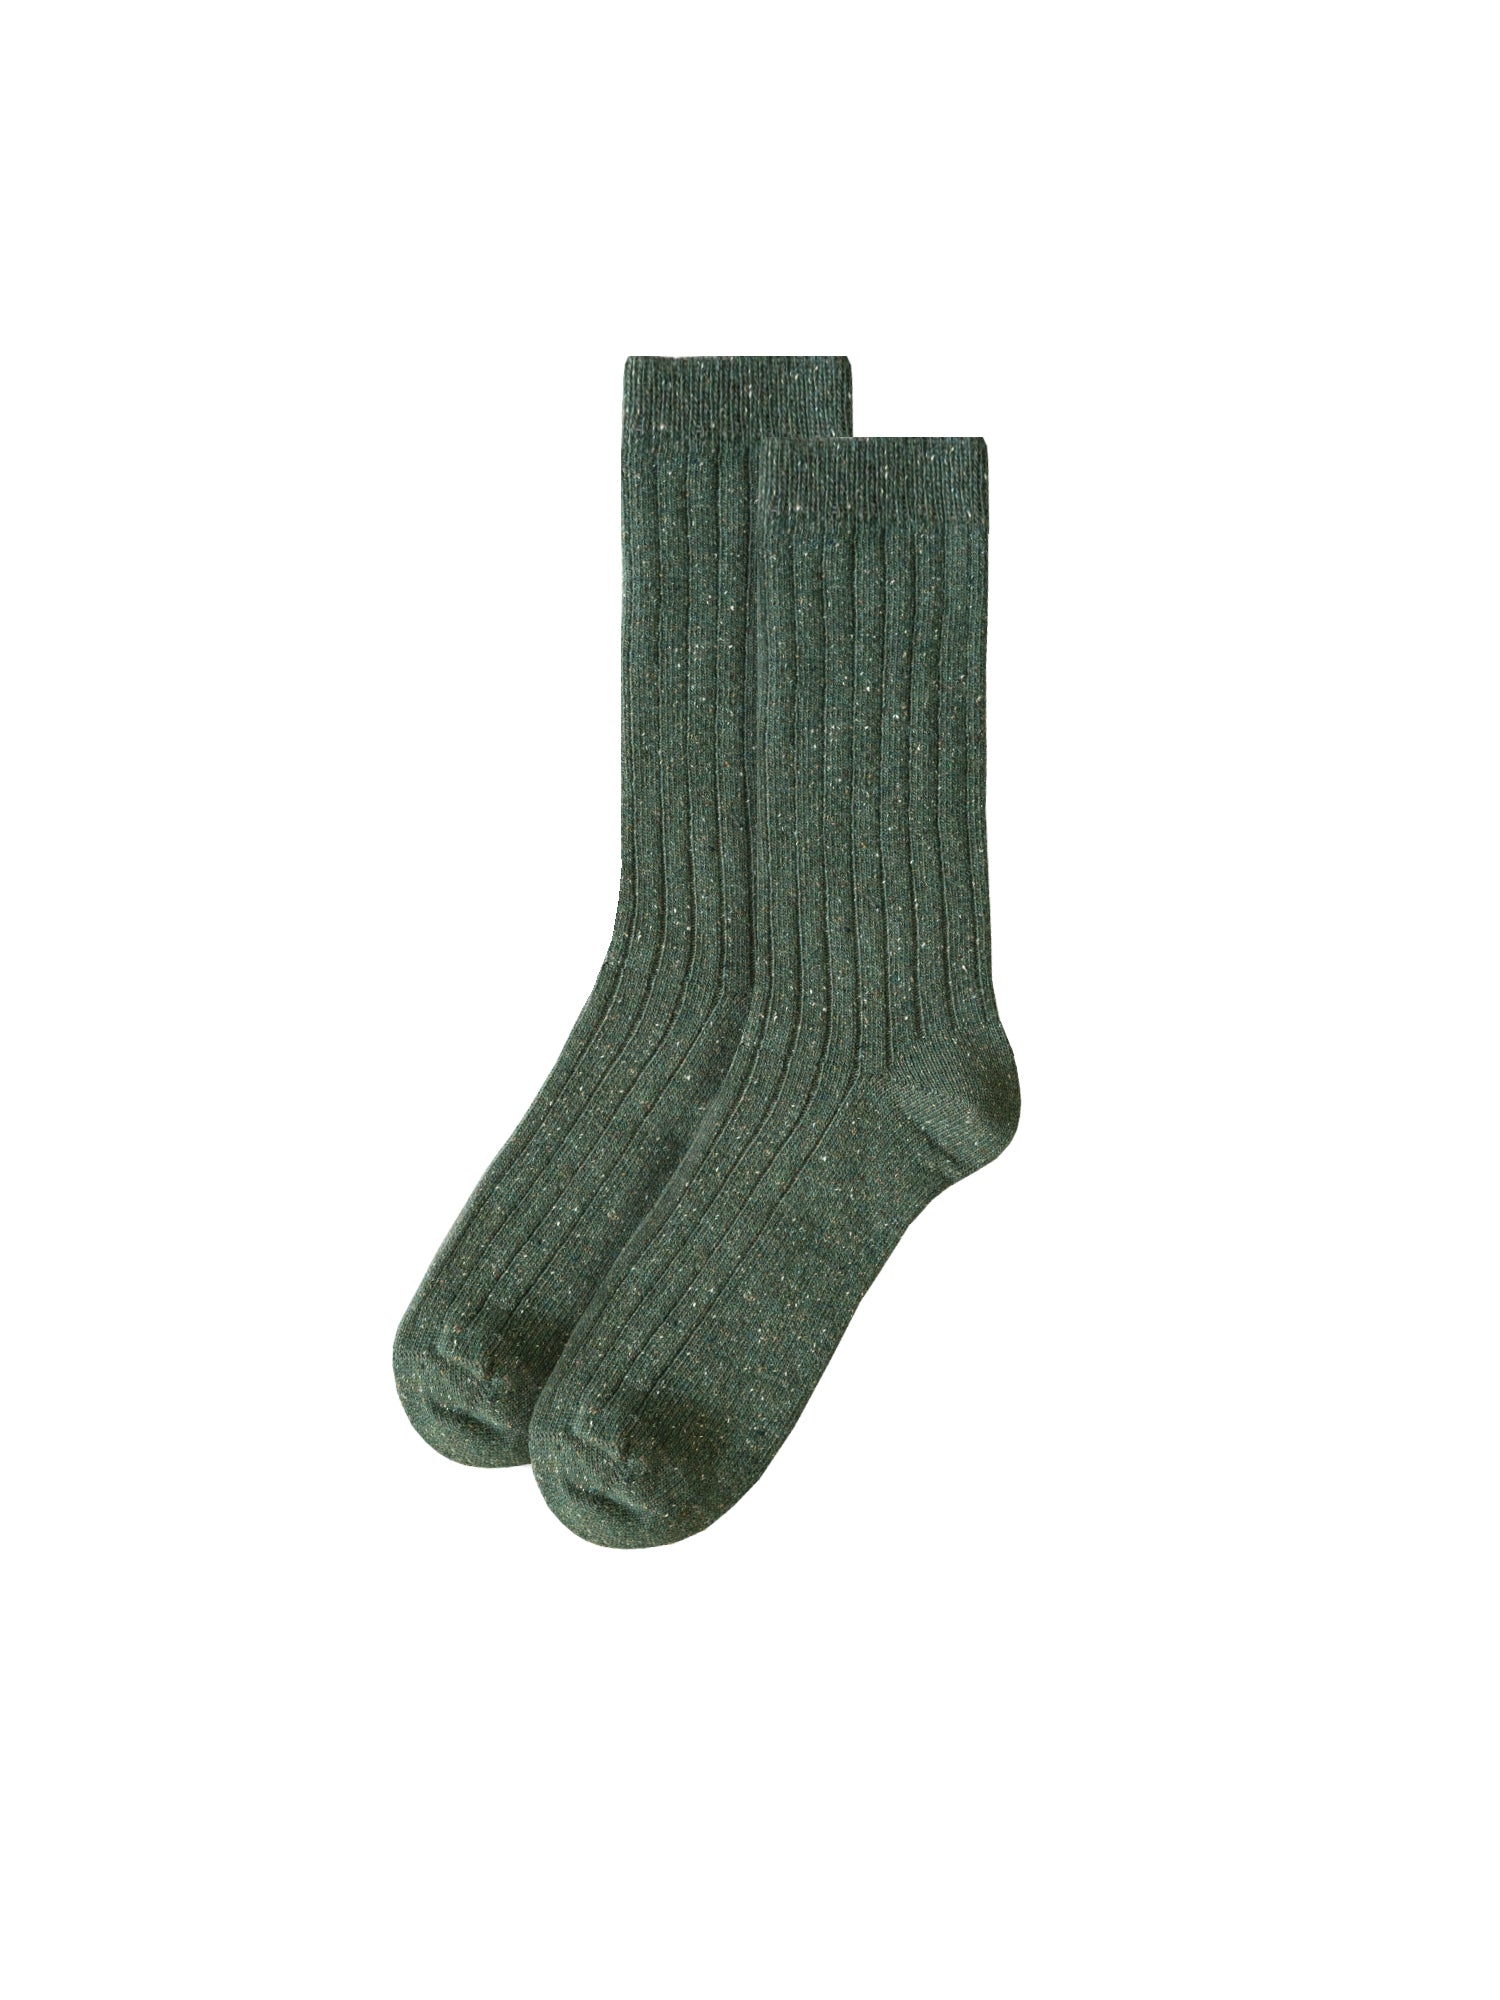 FUXBAU Fair Fashion Socken in grün mit dezenten Neps  aus Wolle und unter fairen und nachhaltigen Bedingungen in Portugal hergestellt.